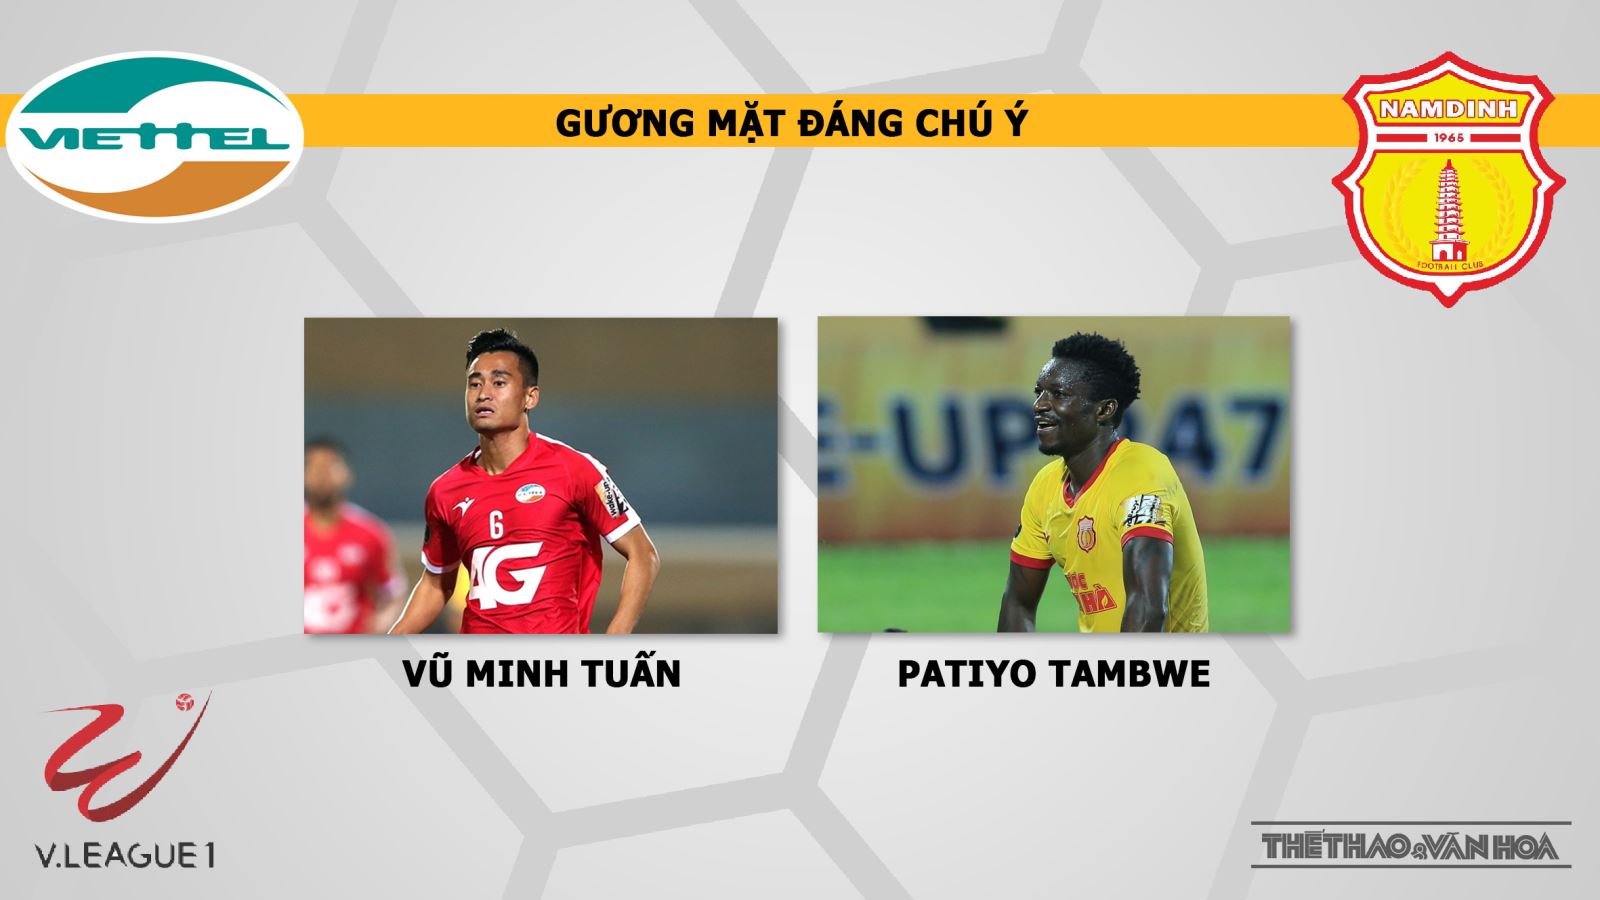 Viettel vs Nam Định: Nhận định và trực tiếp bóng đá (19h00, 13/4). Lịch thi đấu V-League 2019